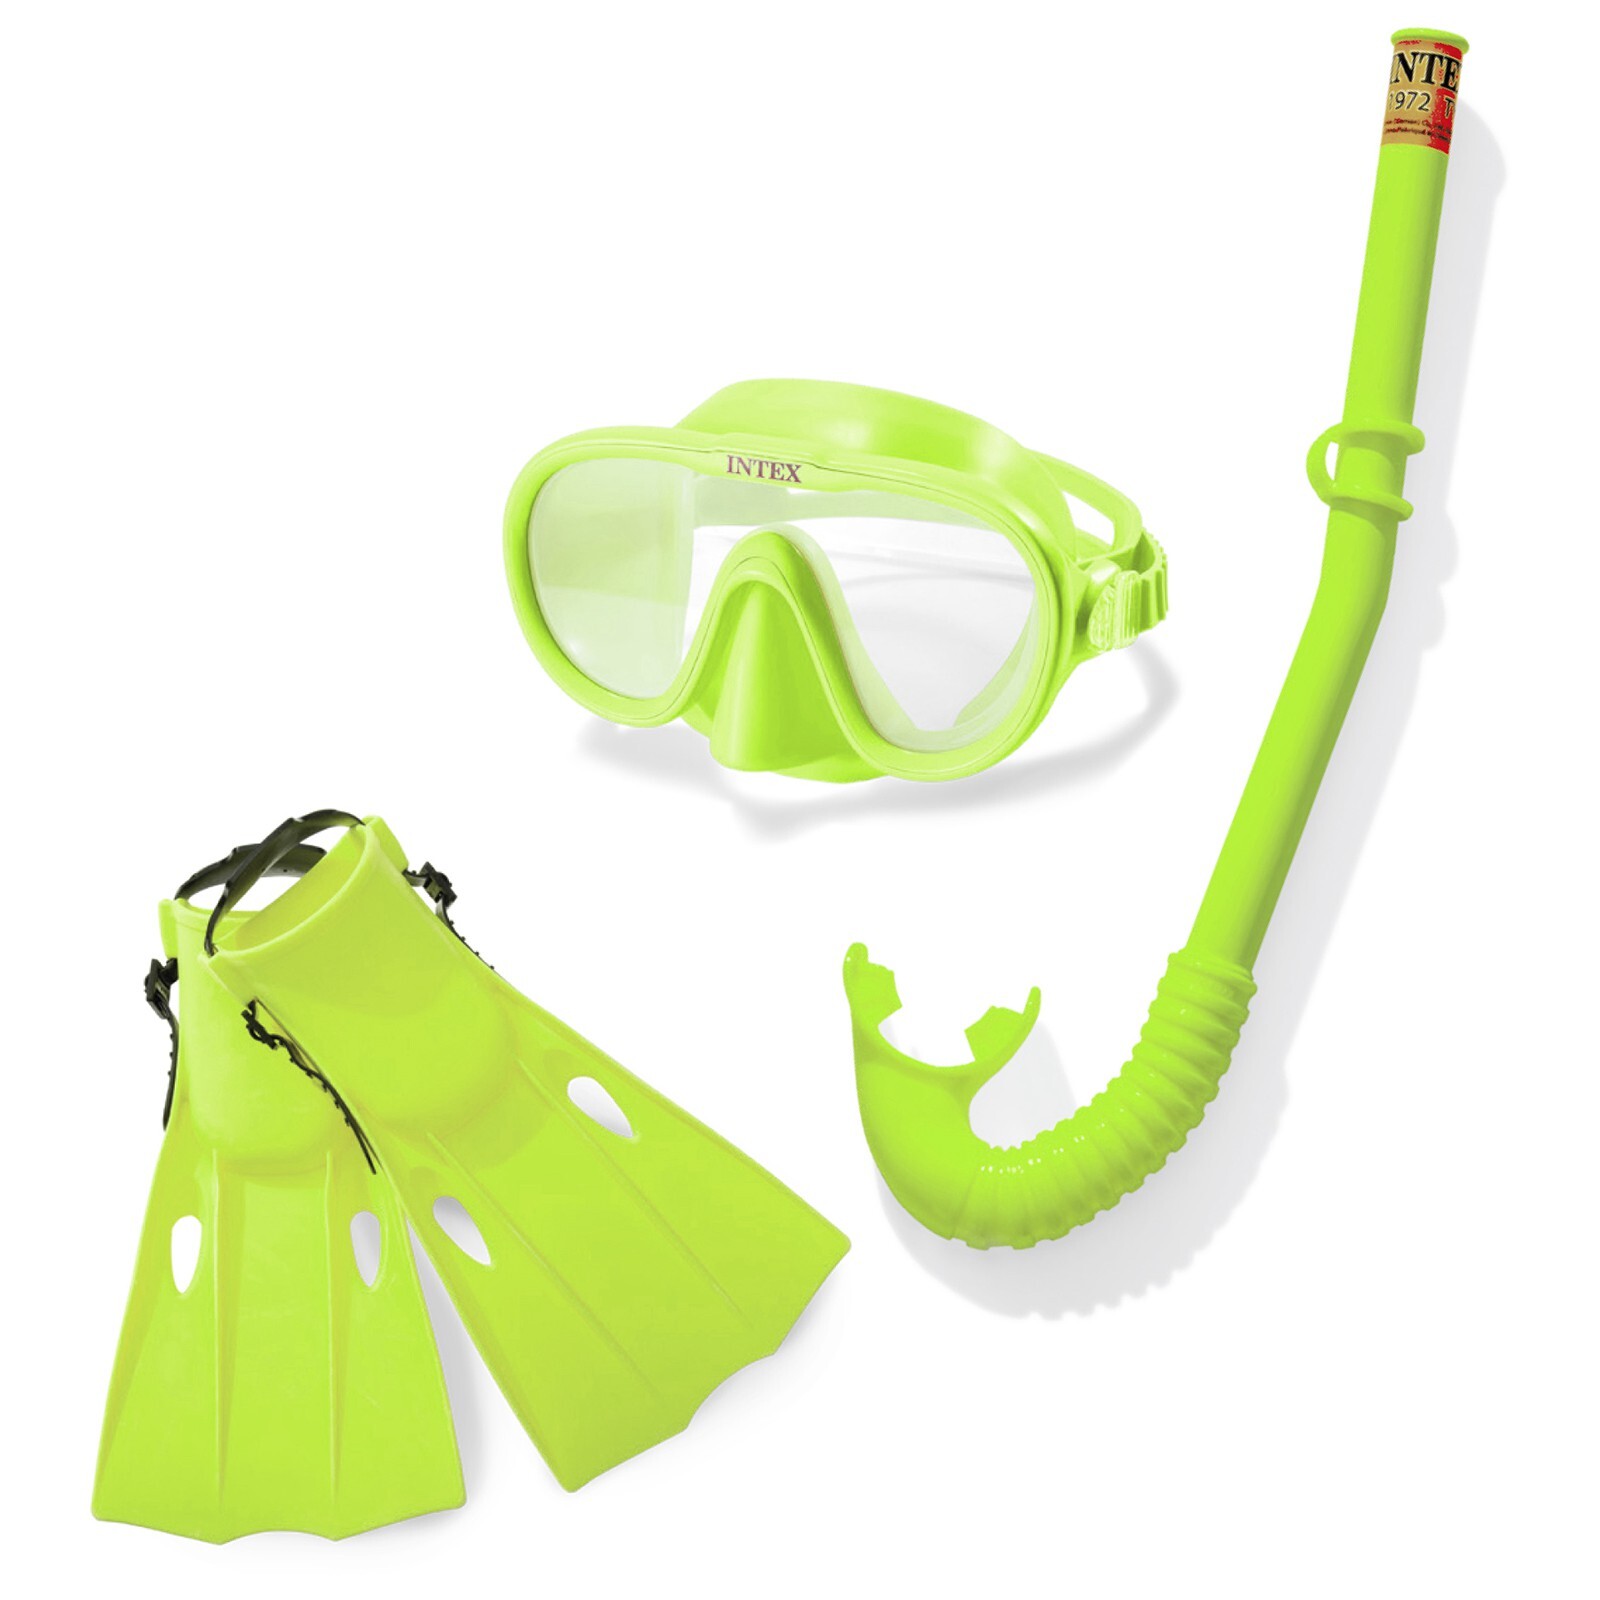 Набор для подводного плавания Intex «Искатель приключений / Master class Swim Set» 55655, маска, трубка, ласты, от 8 лет / Микс